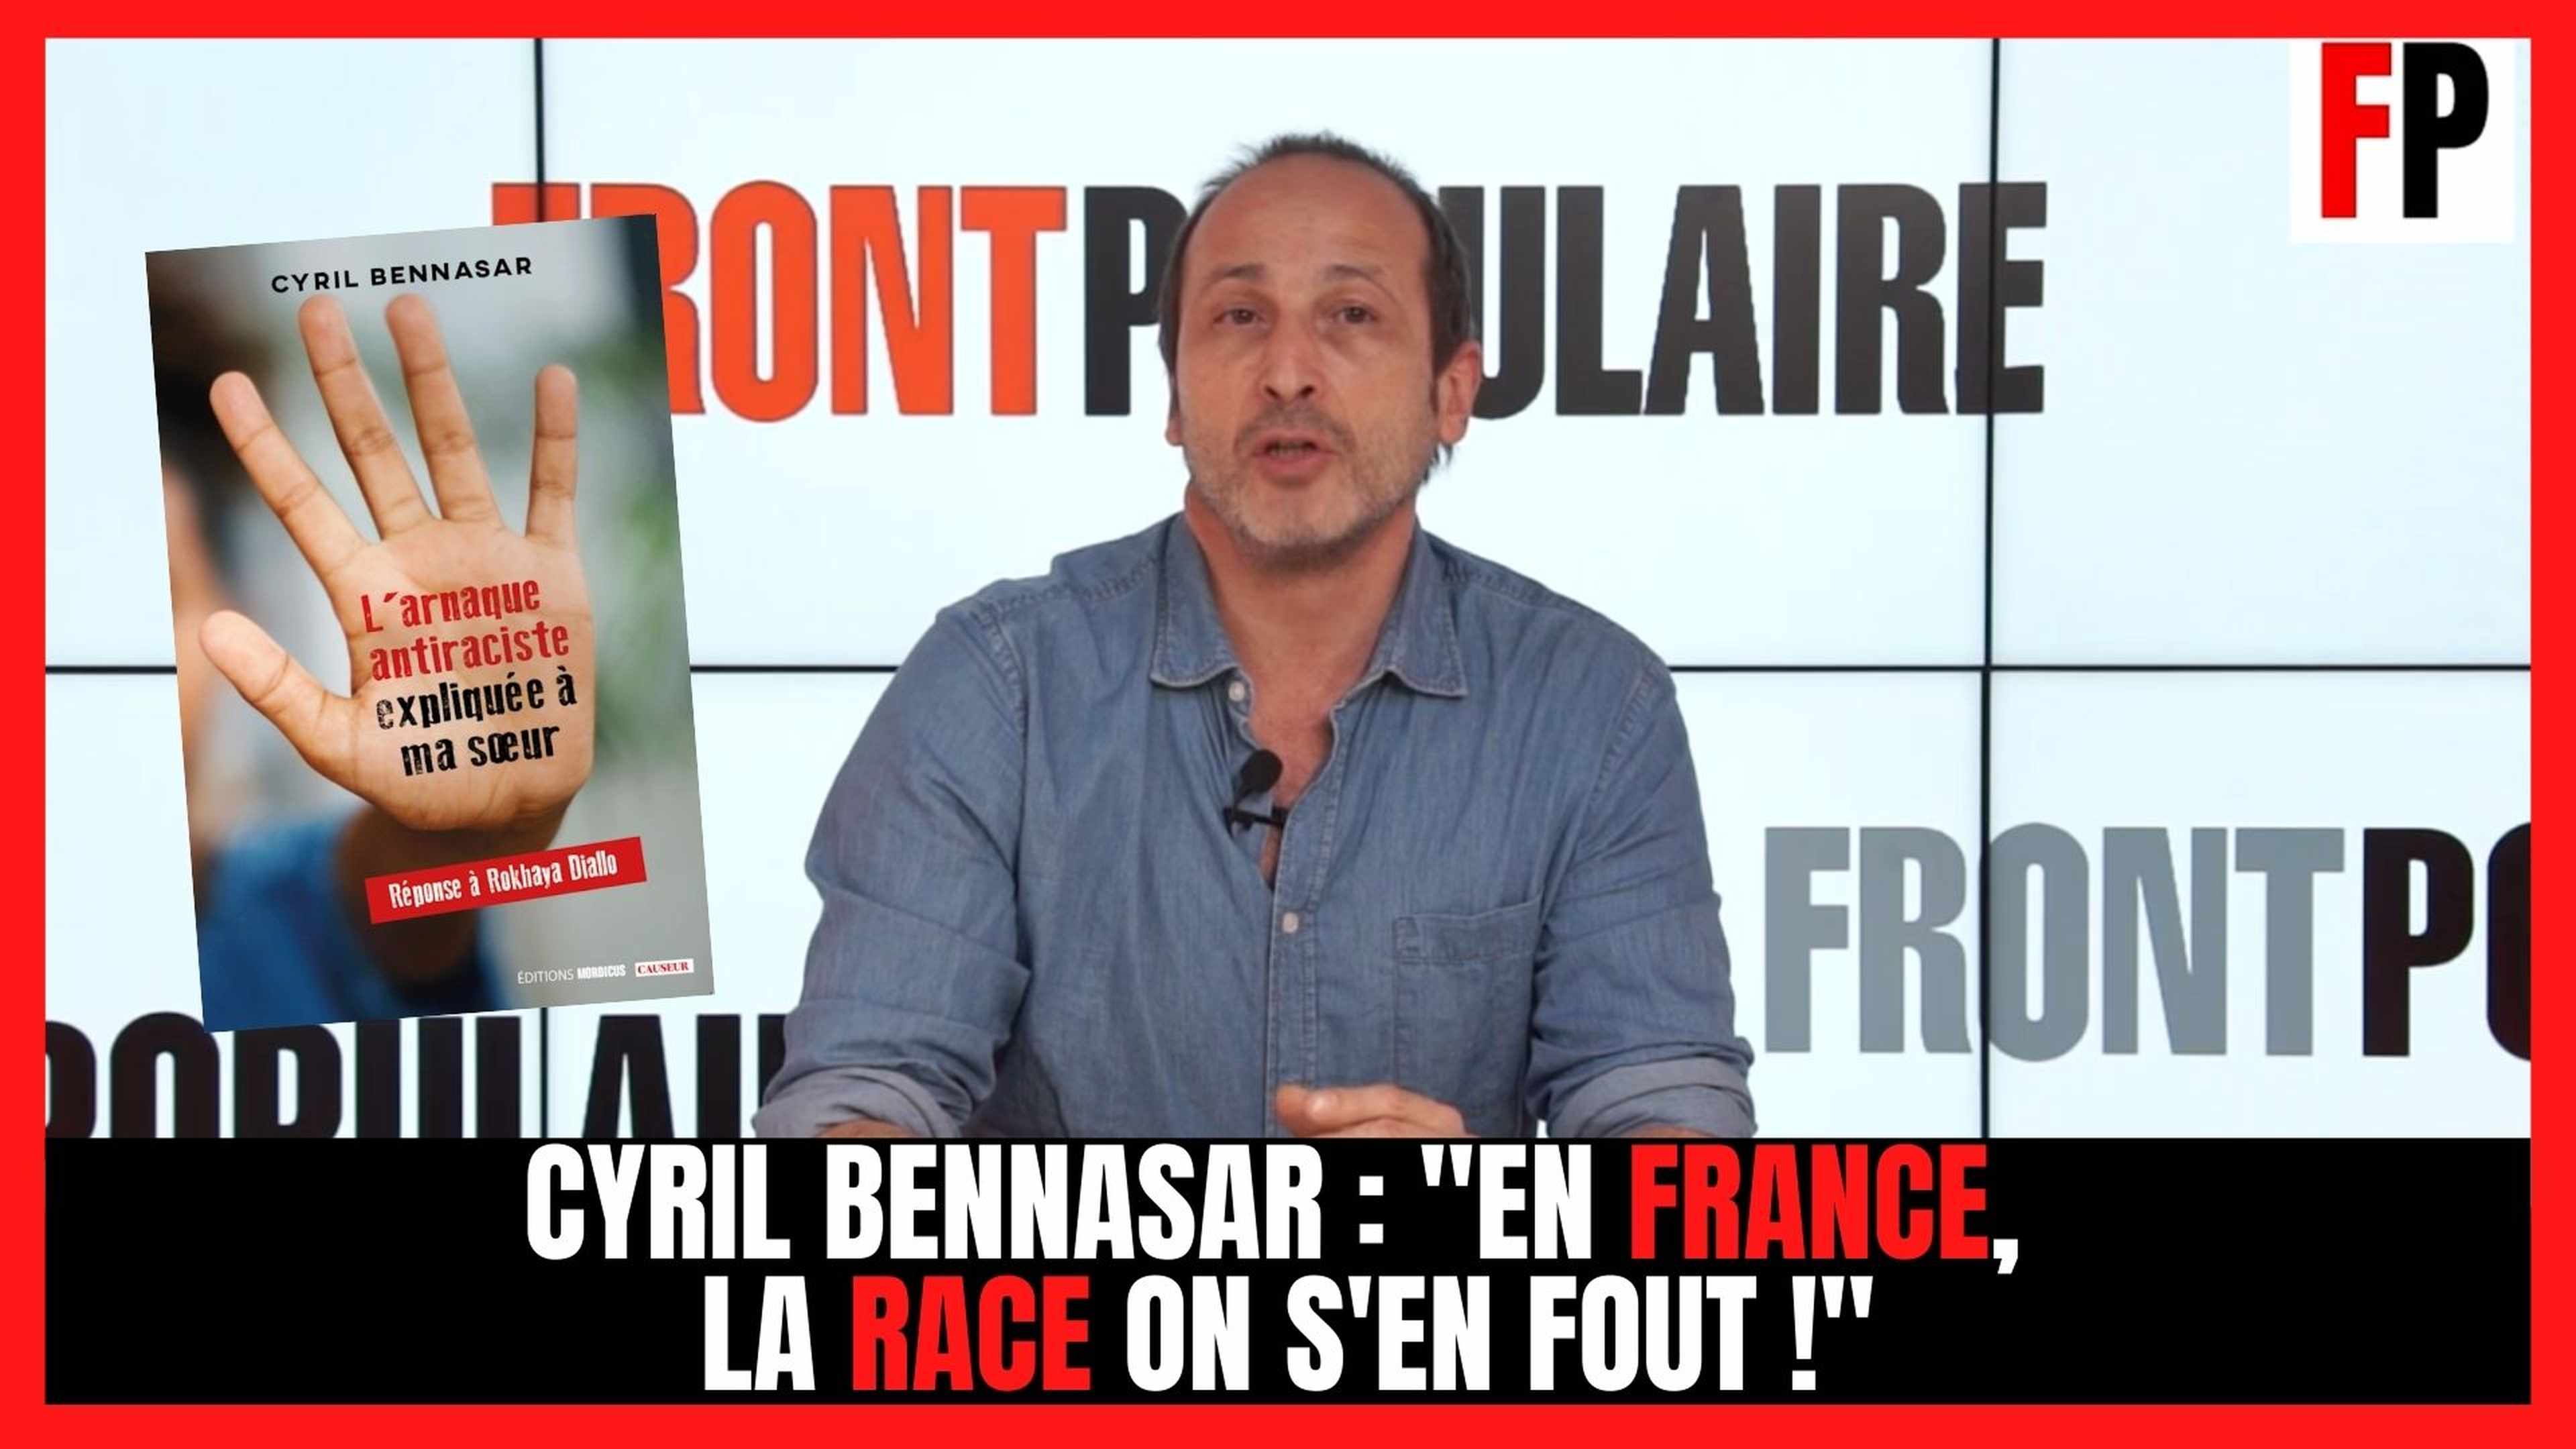 Cyril Bennasar: "En France, la race on s'en fout !"